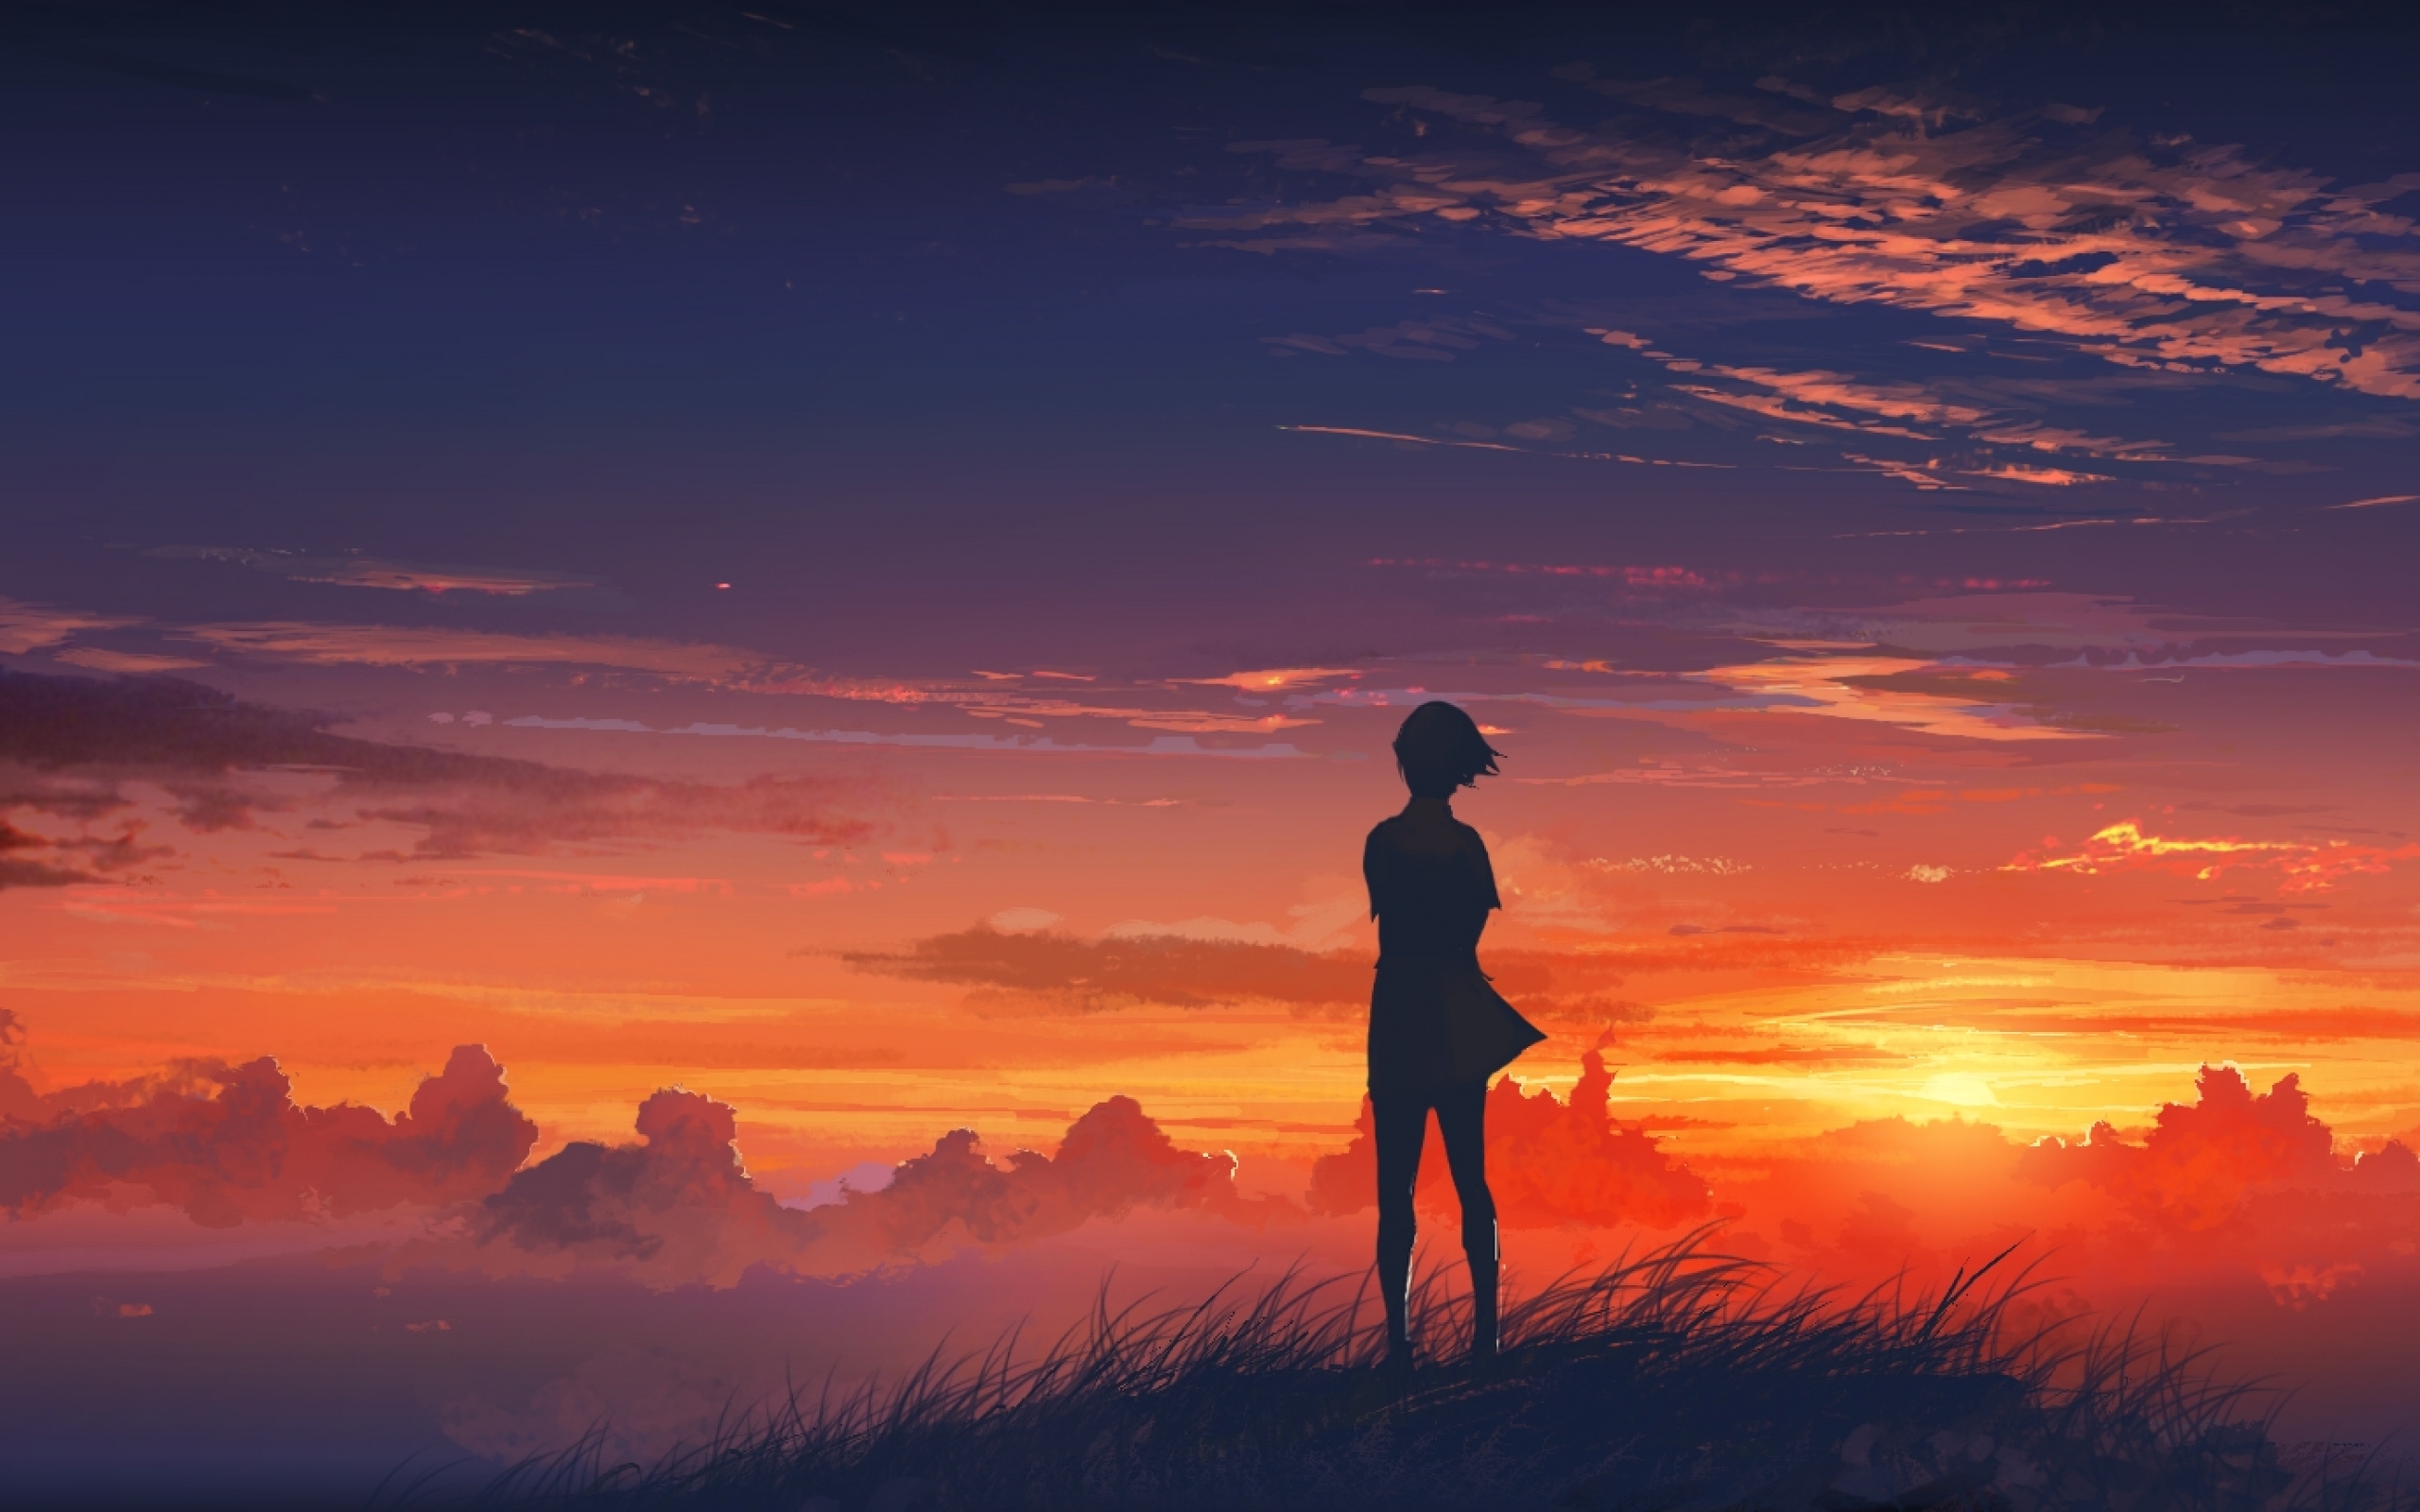 Anime girl named Standing alone. Desktop wallpaper by Agnidevi.